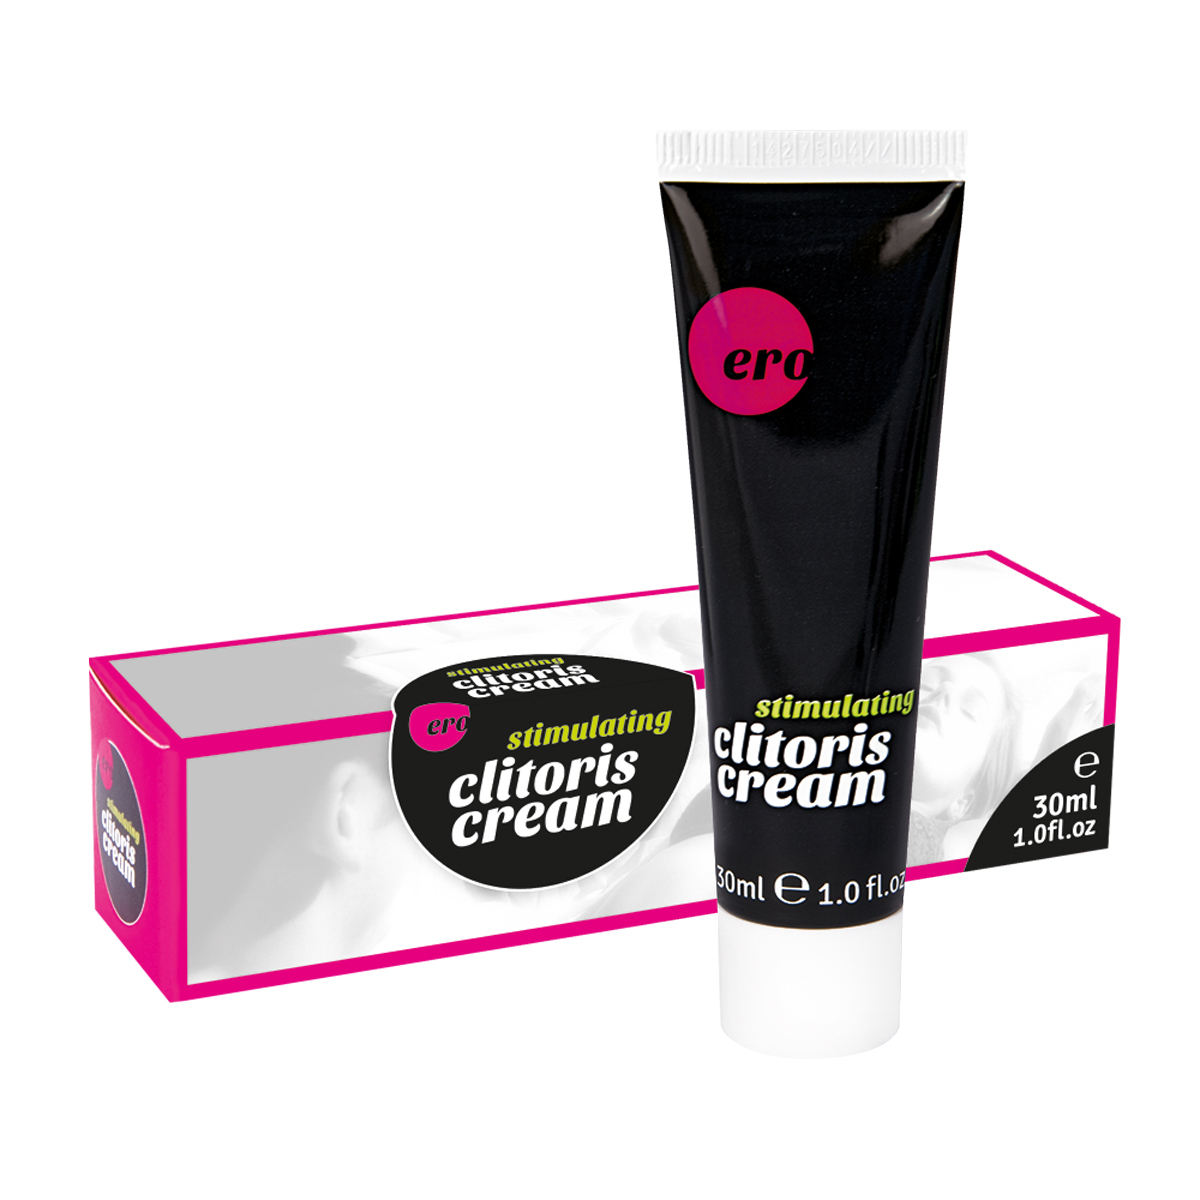 Крем для стимуляции клитора Hot, Stimulating Clitoris Cream (30 мл) - купит...